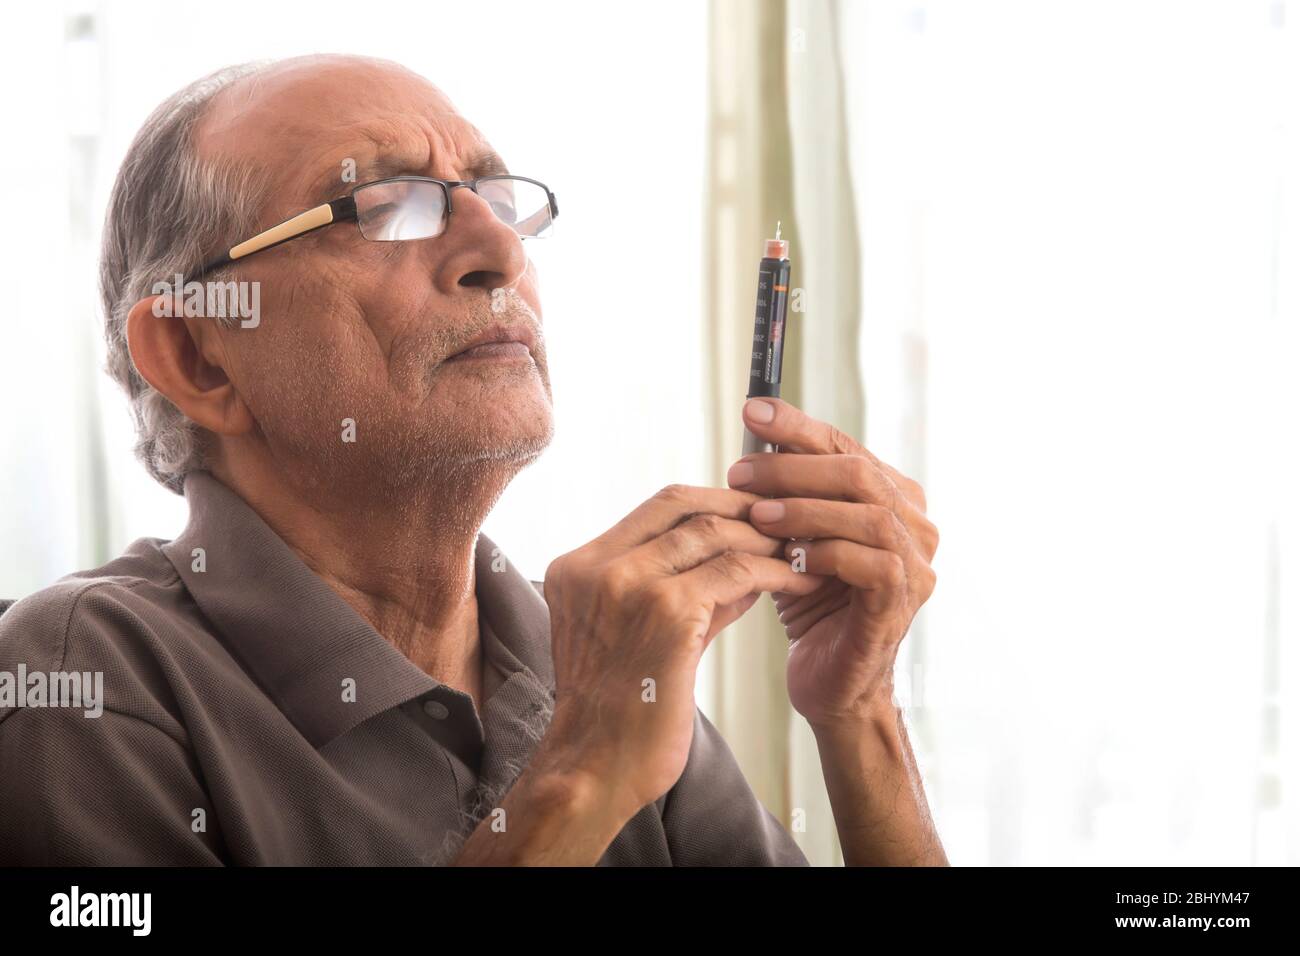 Homme senior tenant un stylo à insuline dans la main. (Santé et forme physique) Banque D'Images